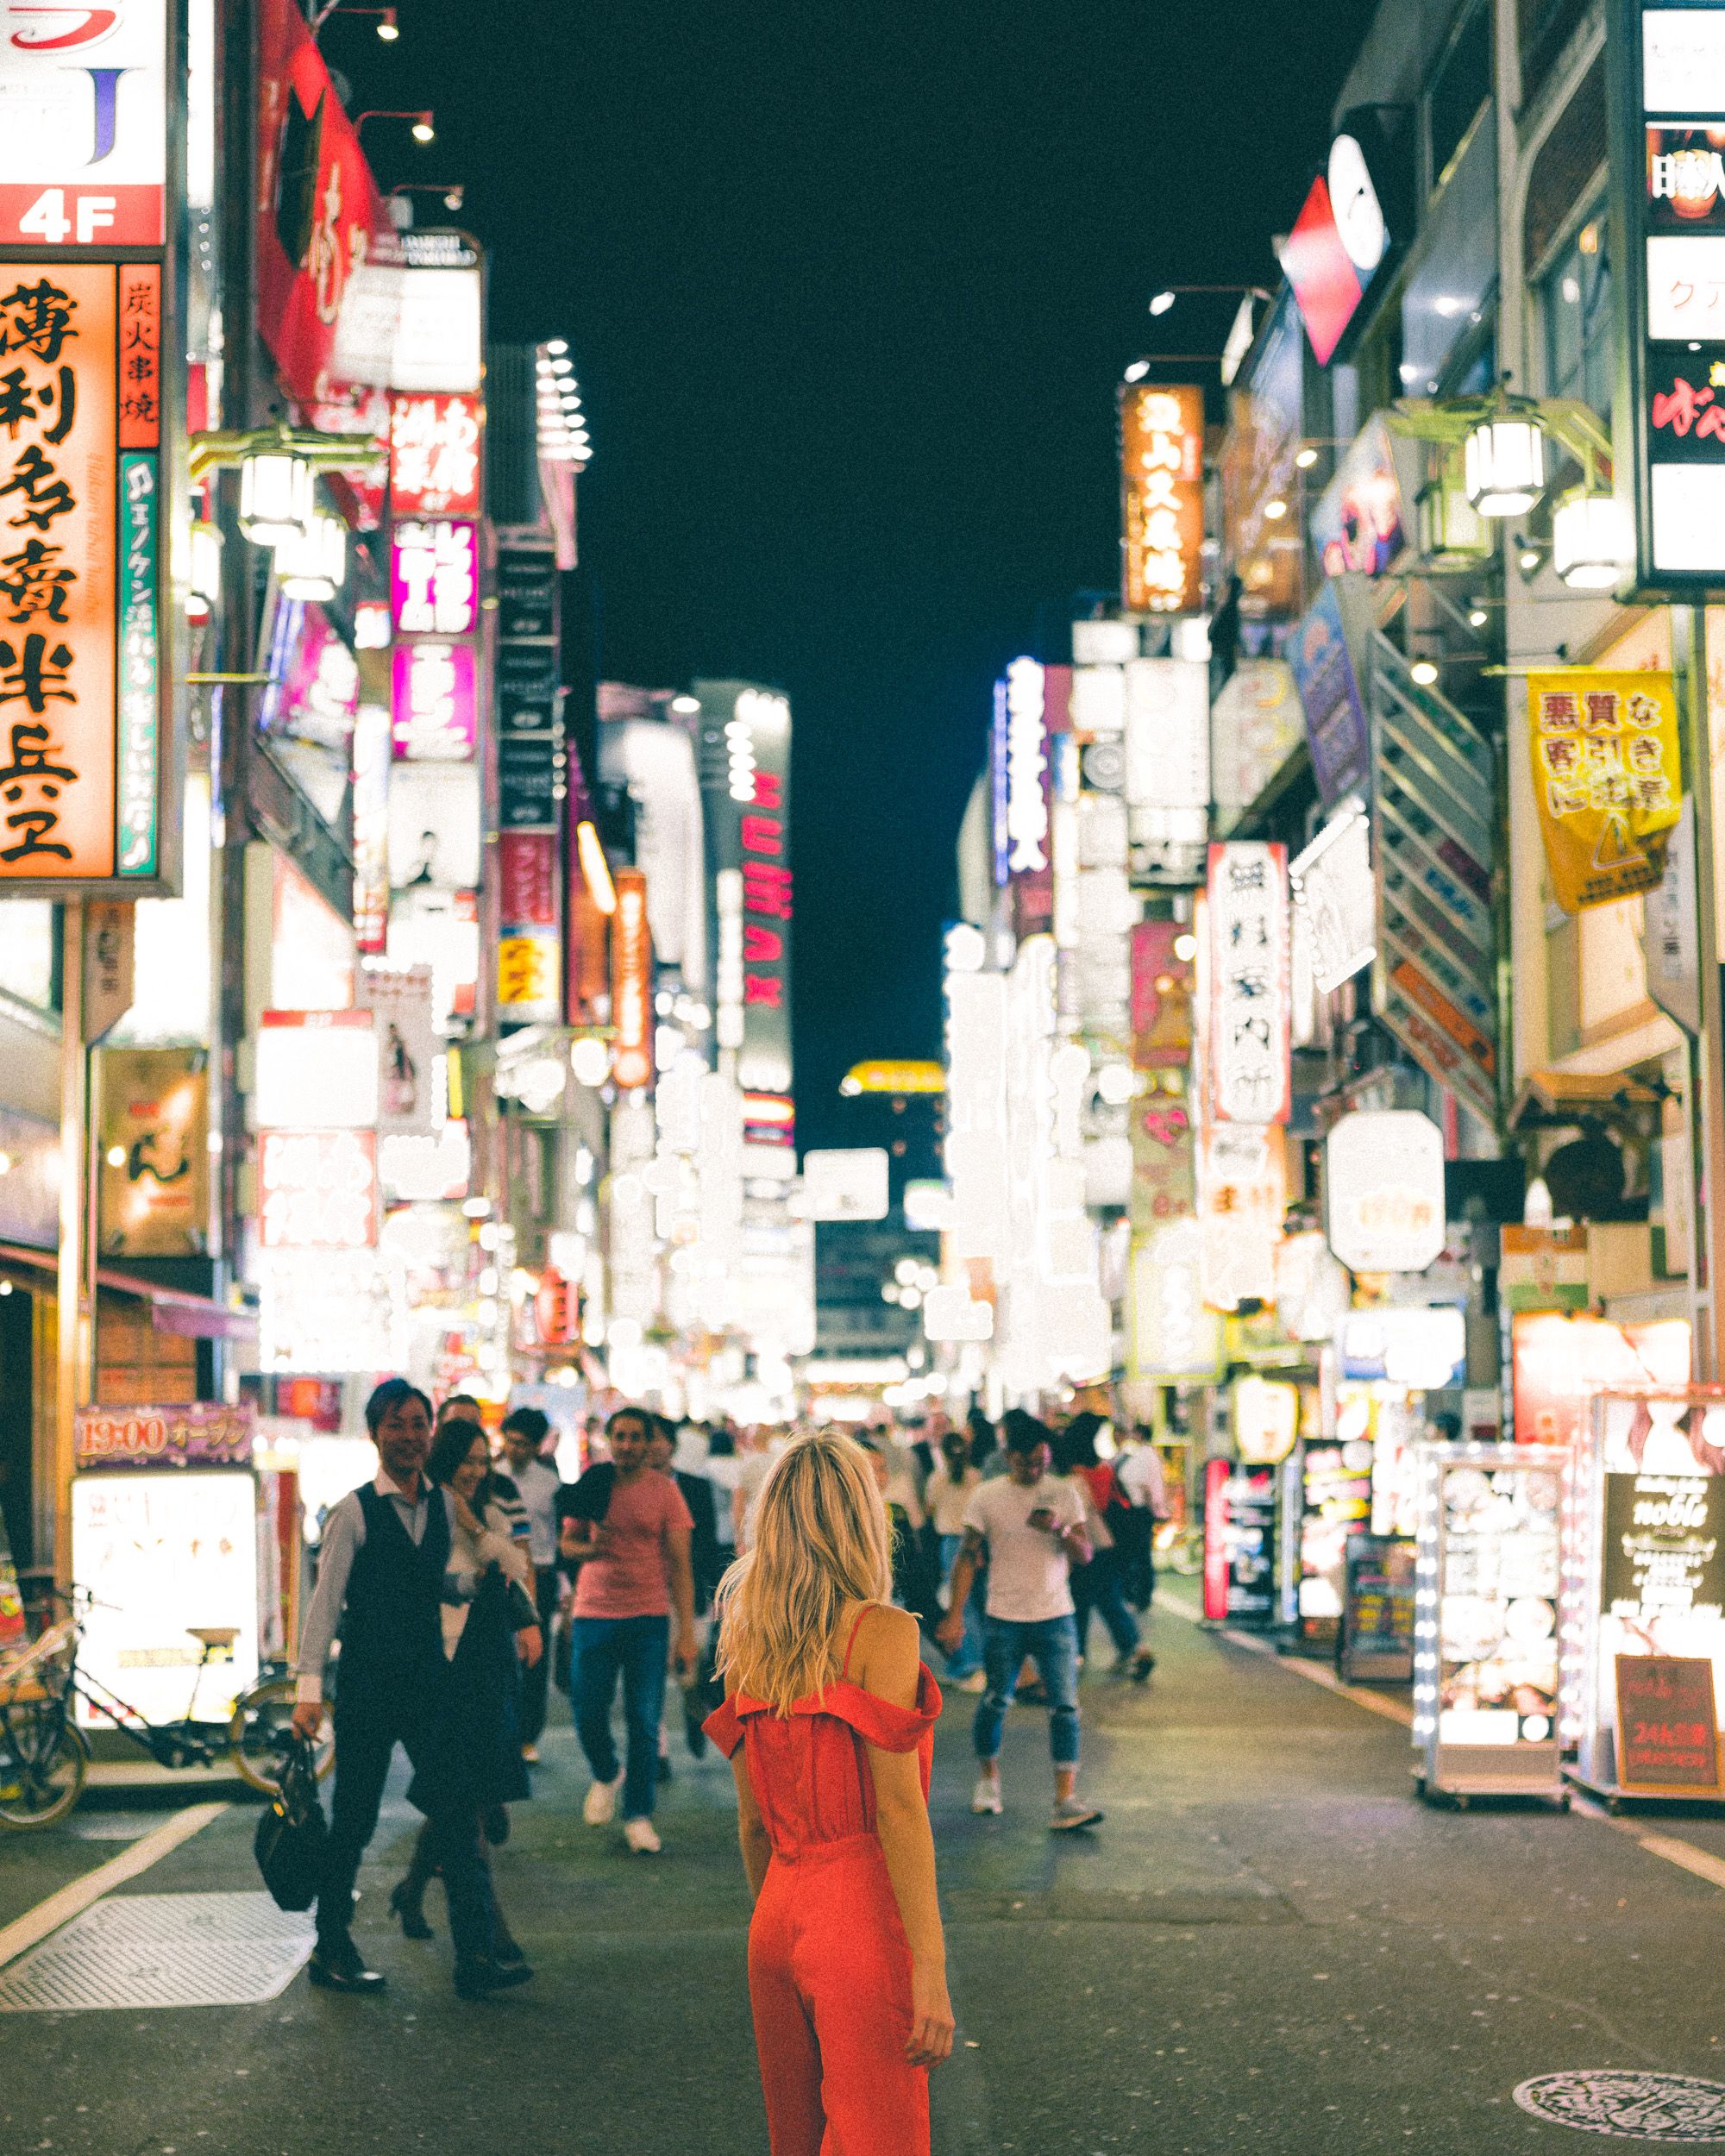 View of Tokyo street after dark